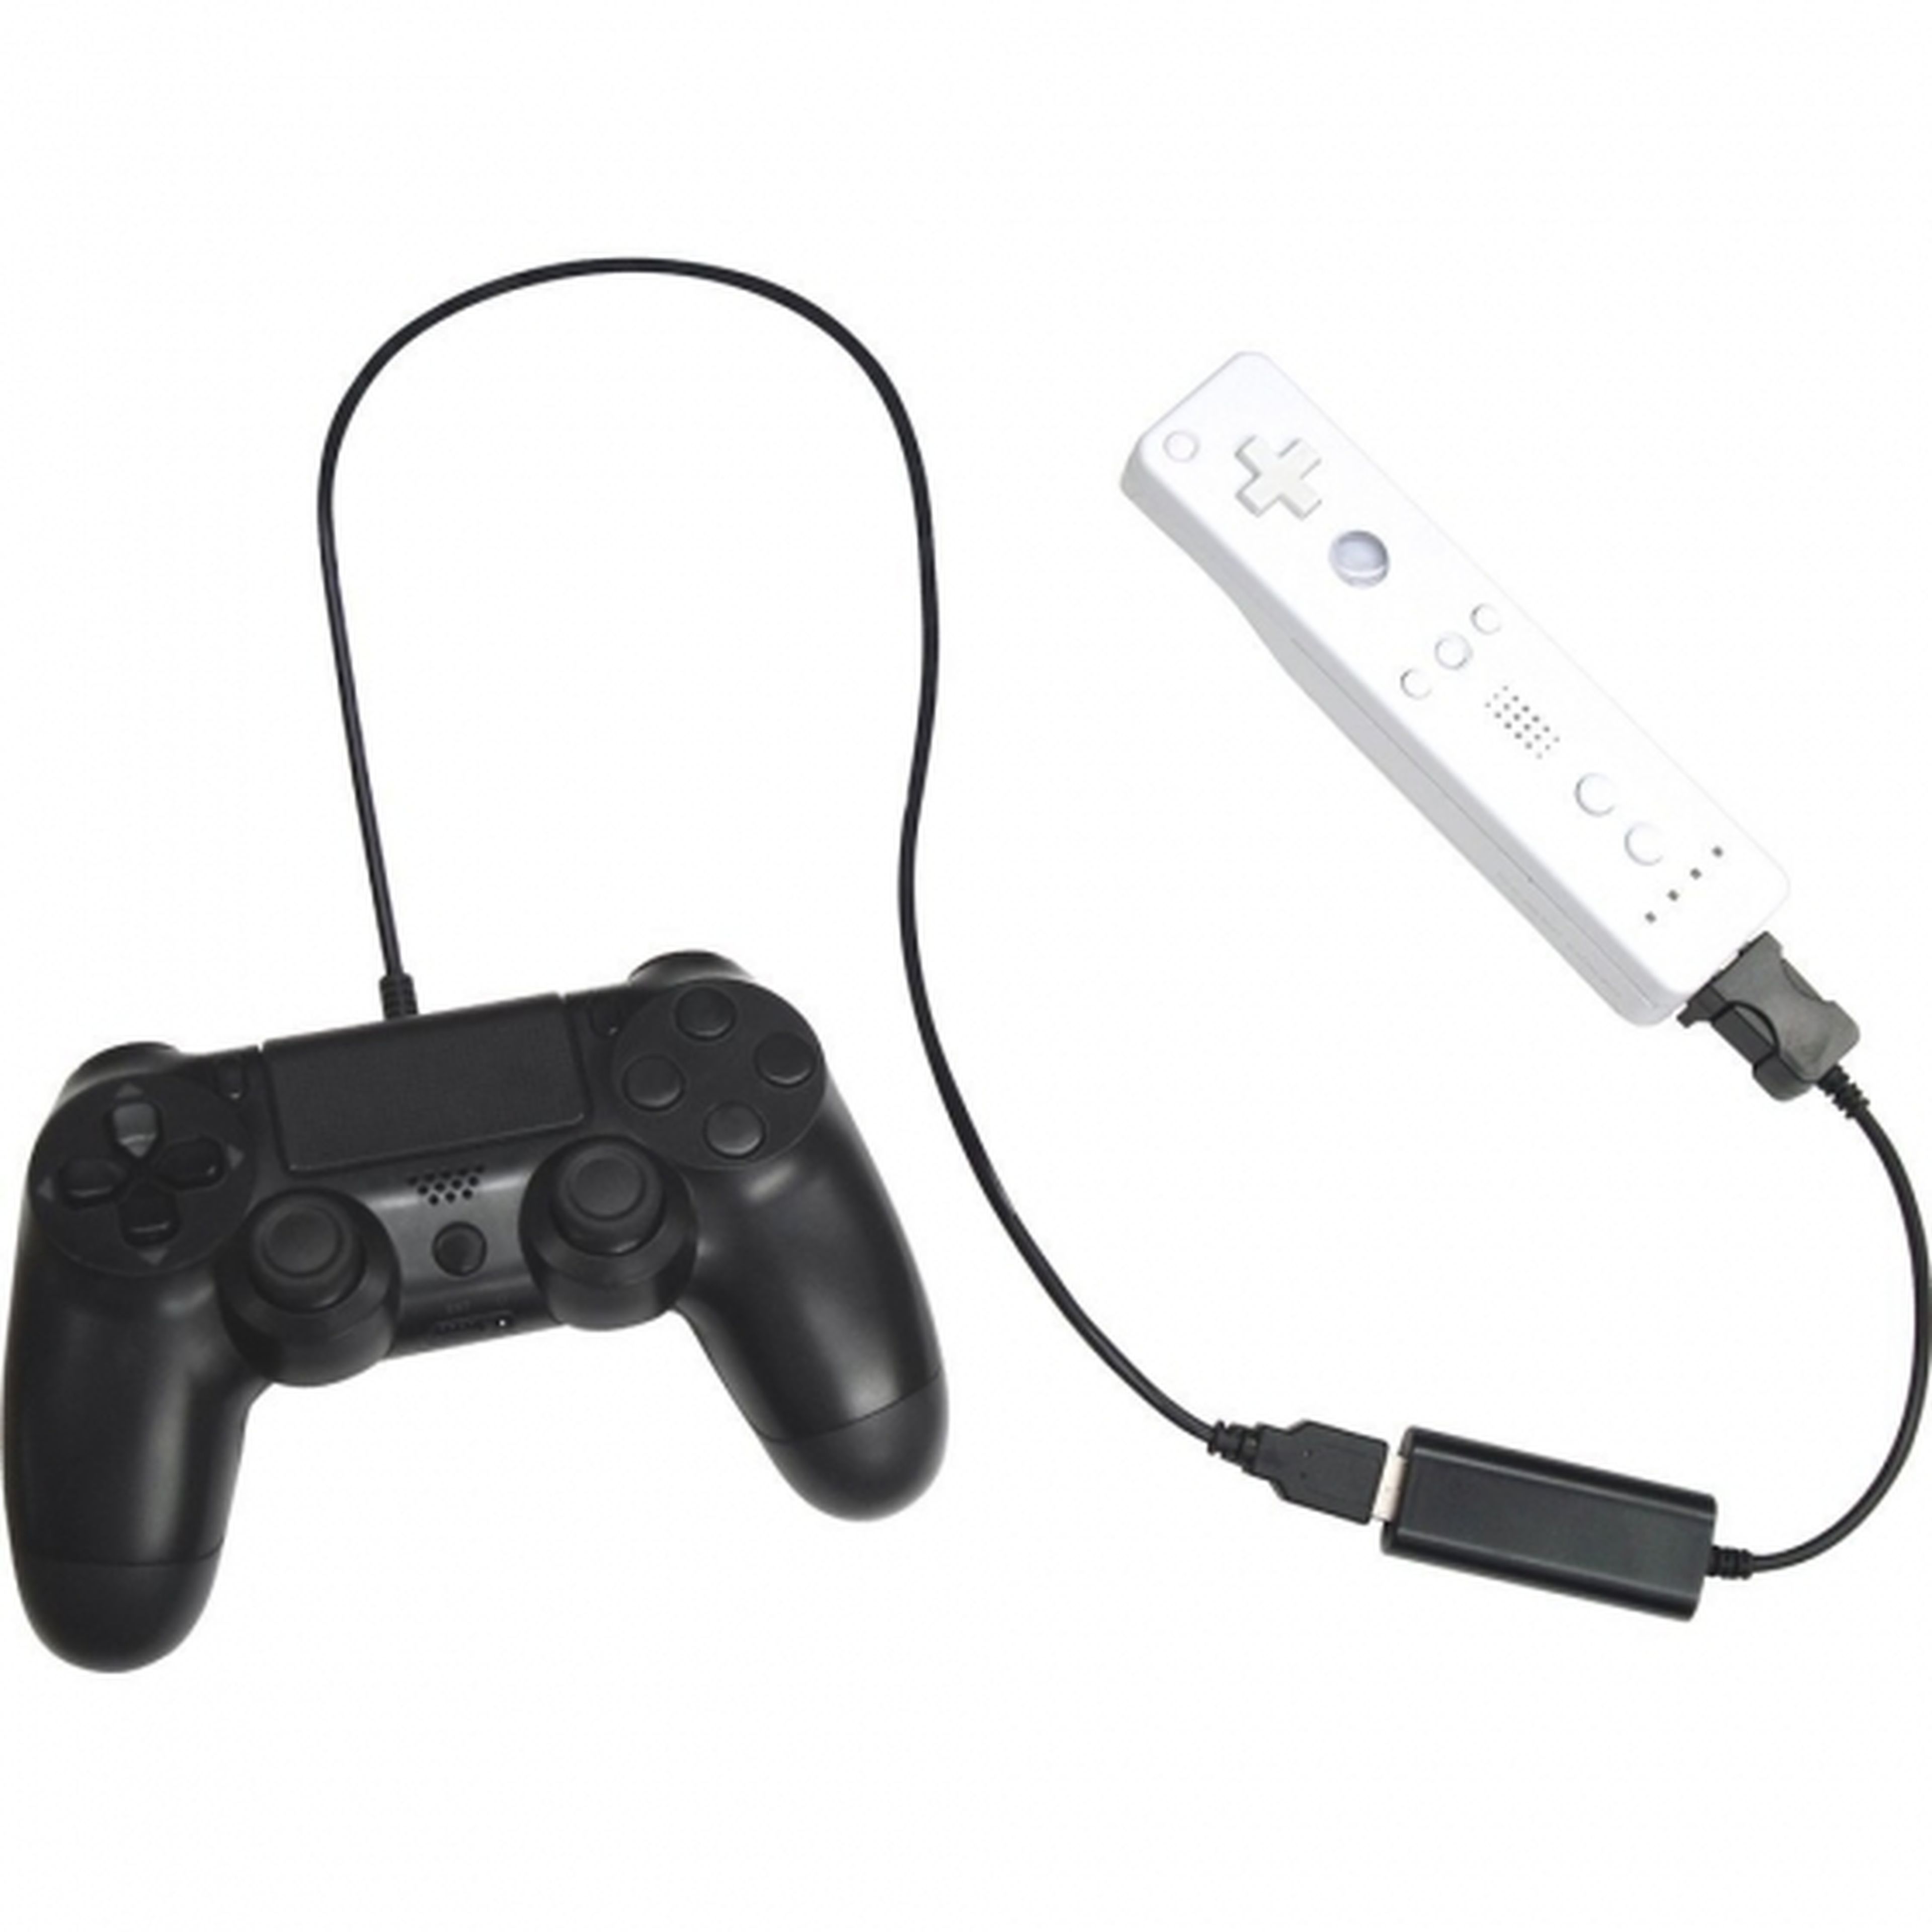 Ya puedes jugar con Dualshock 4 en tu Wii U